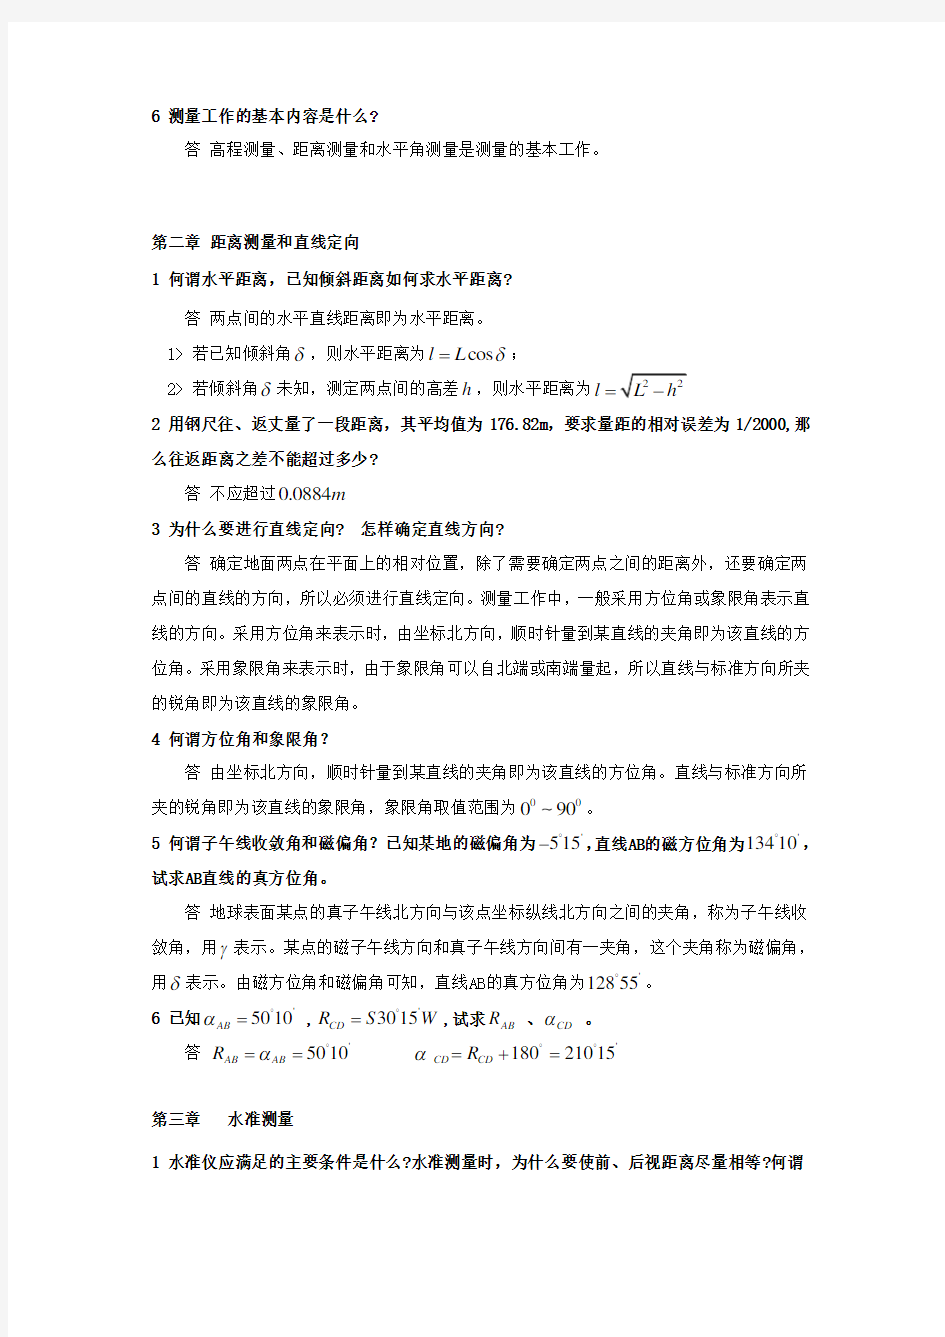 测量学课后习题答案中国矿业大学出版(高井祥)